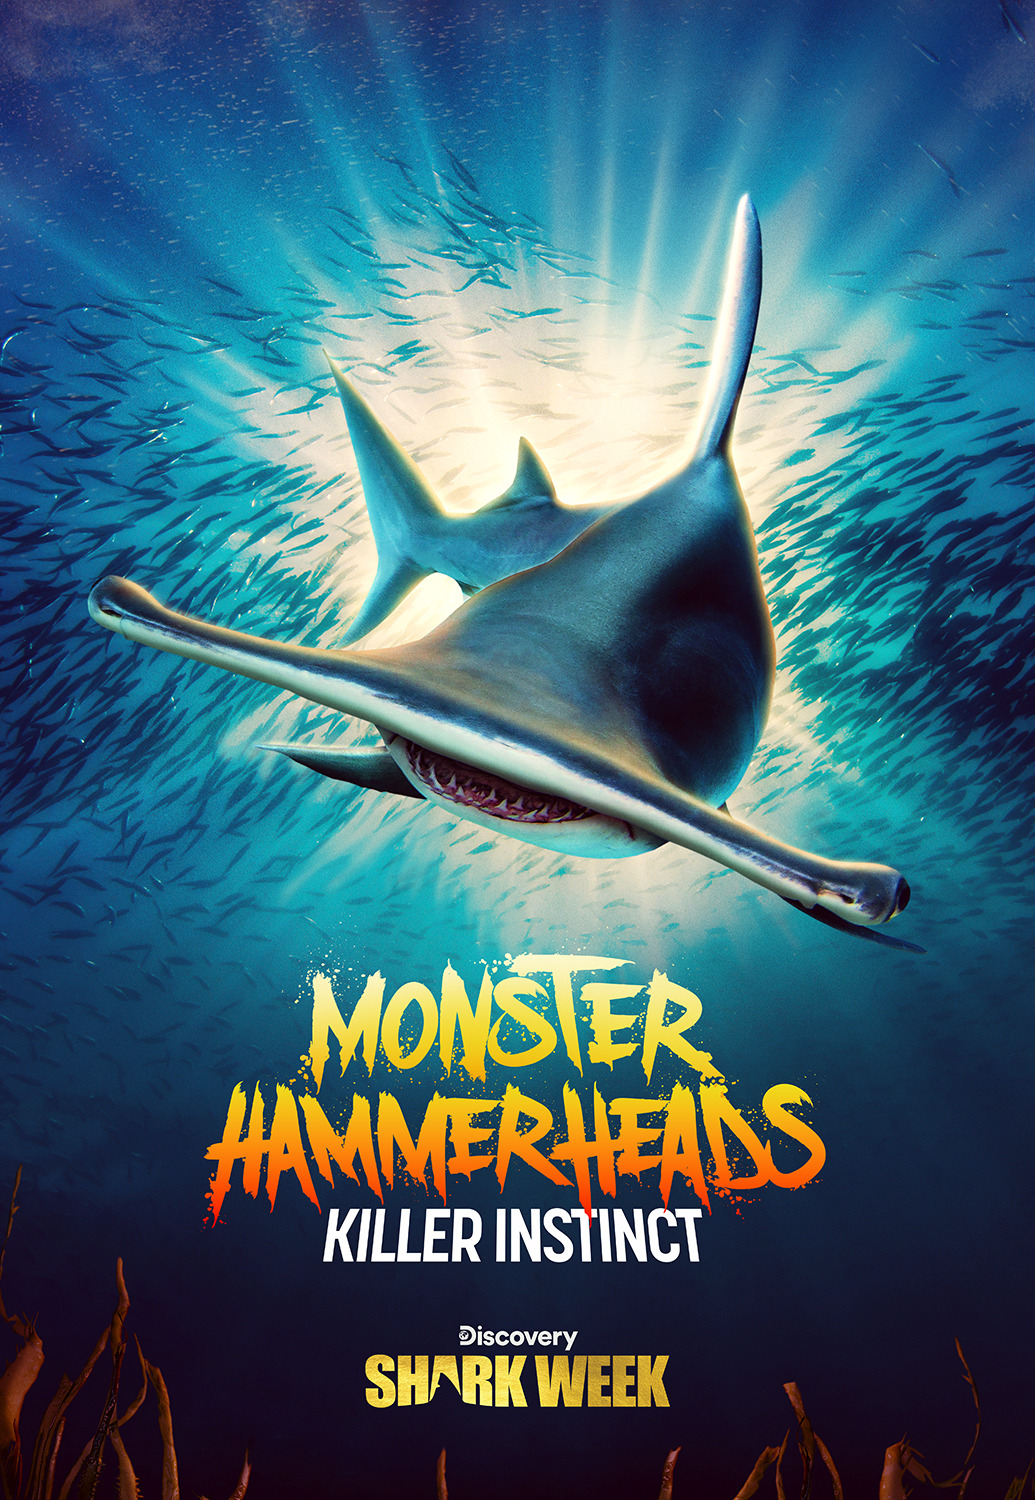 Extra Large TV Poster Image for Monster Hammerheads: Killer Instinct 